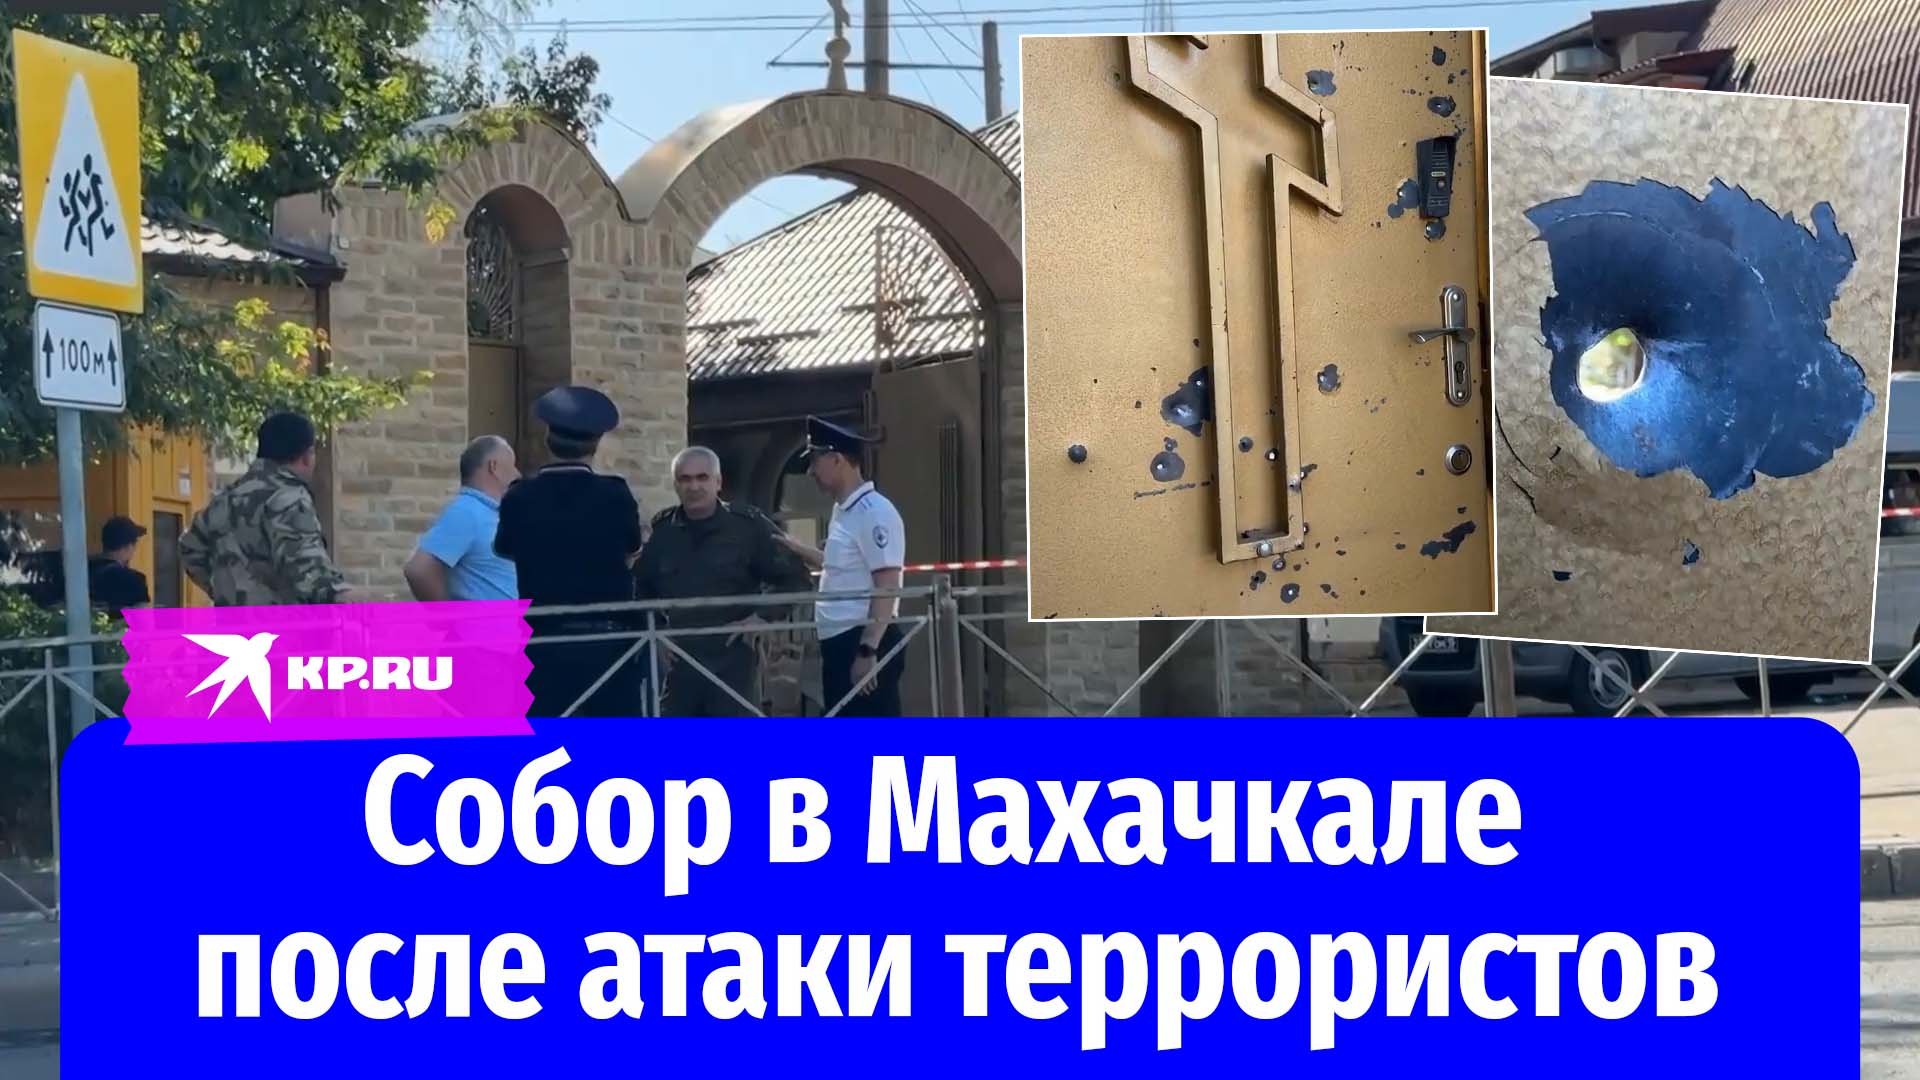 Следователи работают в православном храме в Махачкале после атаки террористов